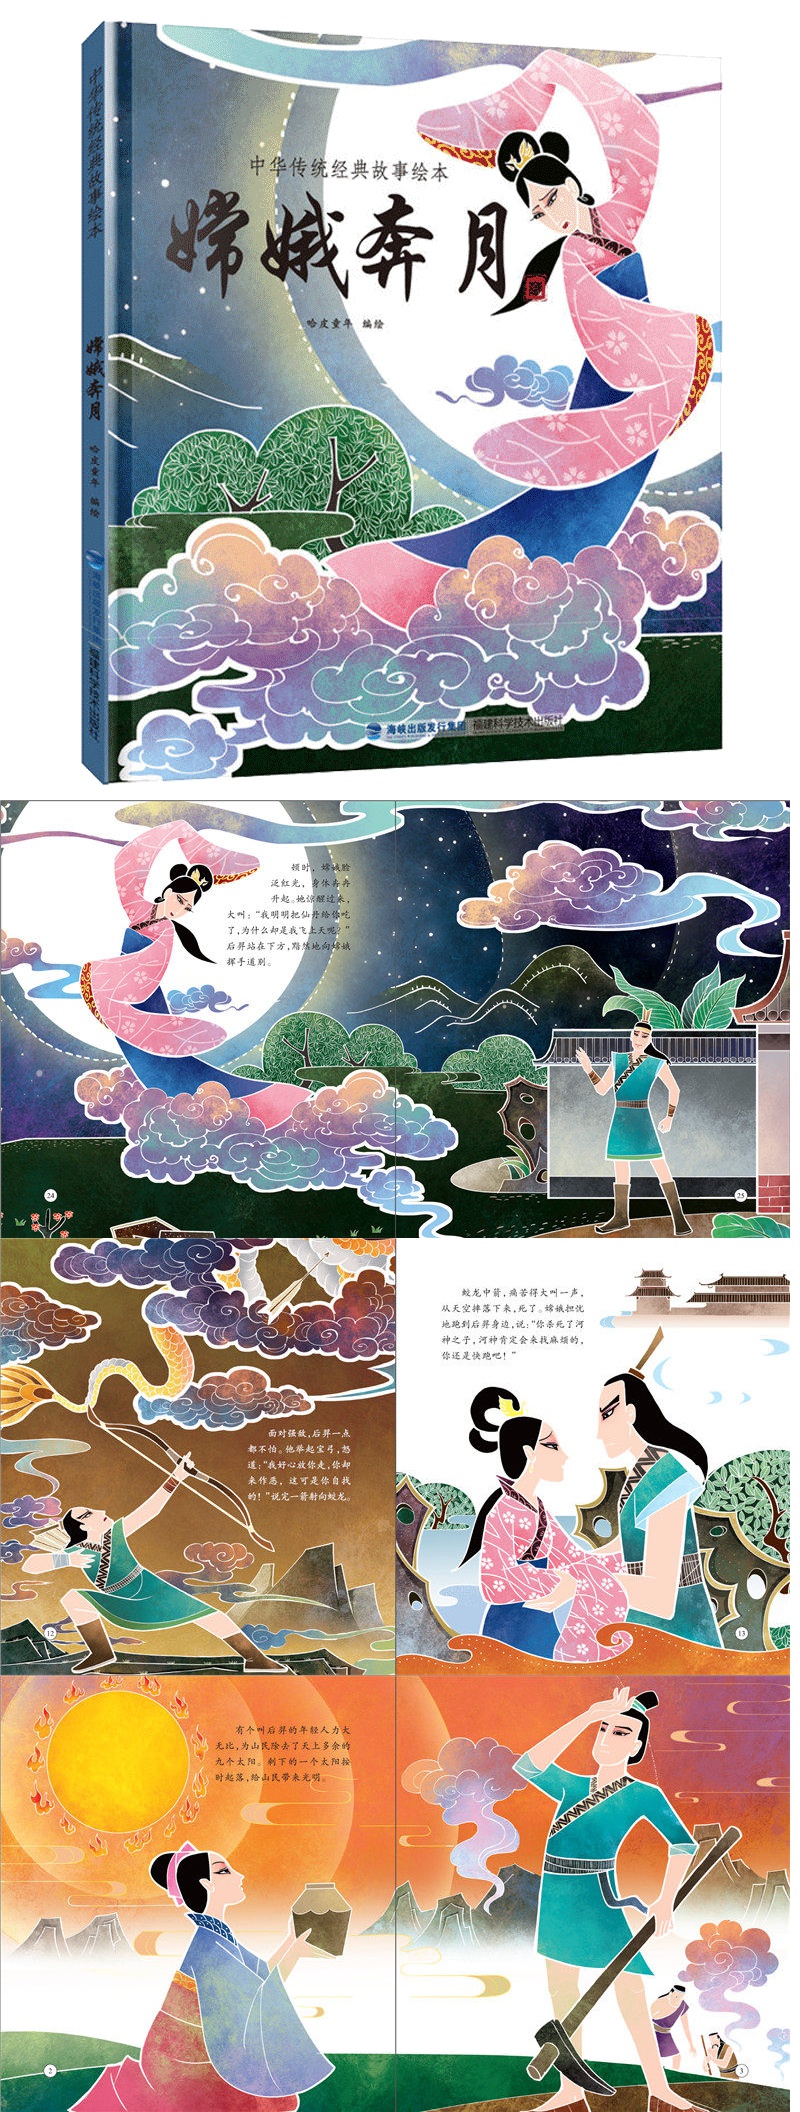 超级新品 嫦娥奔月中国神话故事彩绘精装小学生课外阅读书籍民间故事